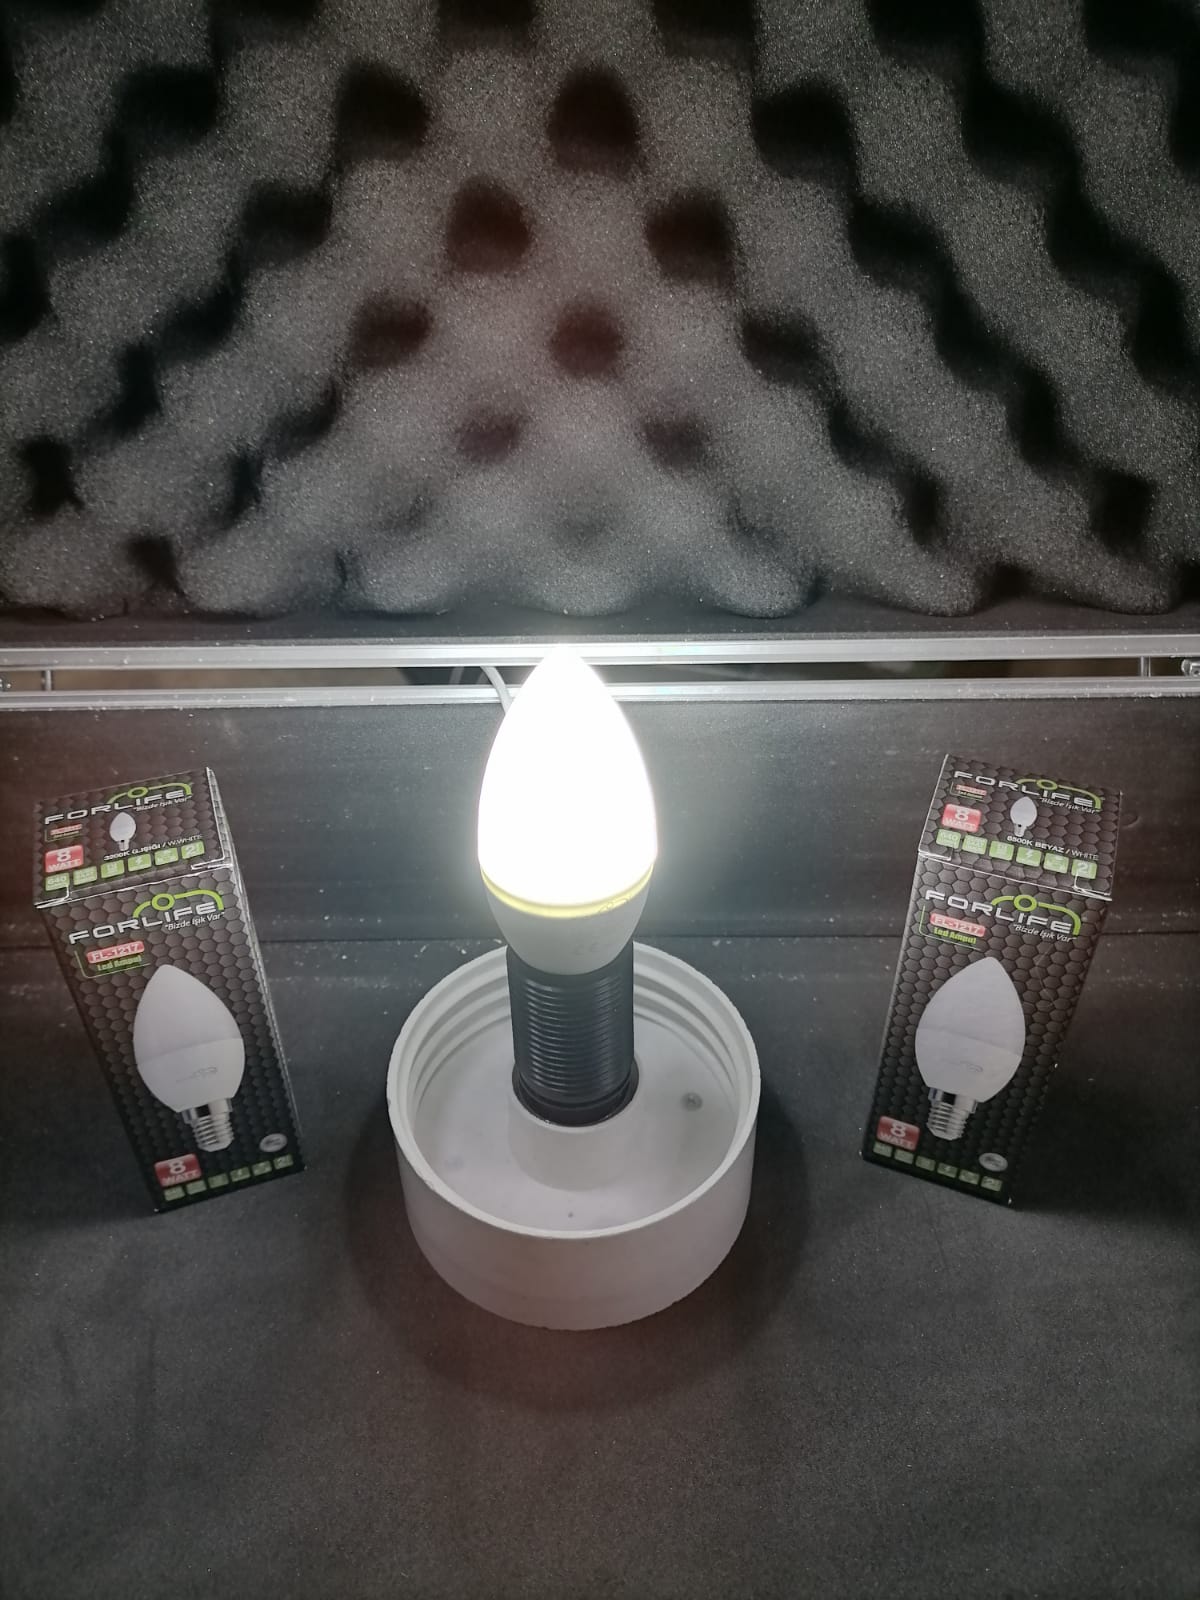 Forlife Mini LED Ampul 7W E14 Beyaz Işık 6500K FL-1153-B Fiyatı